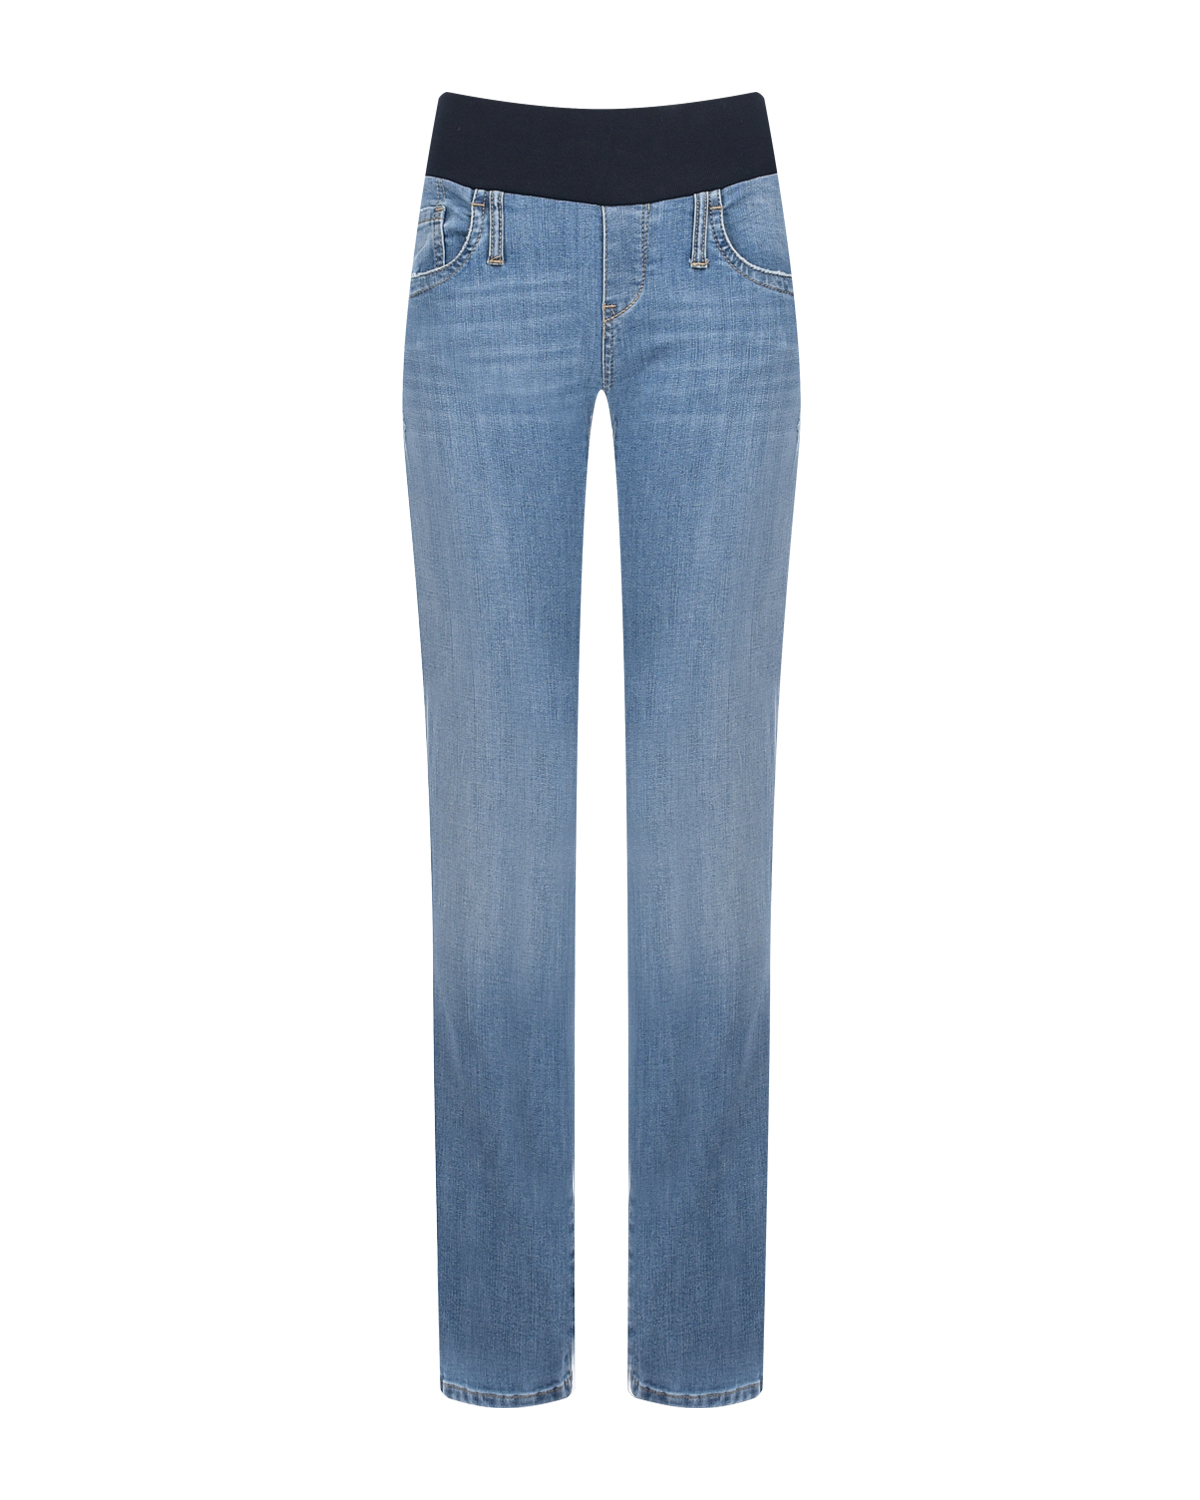 Синие джинсы для беременных на высокий рост Pietro Brunelli белые джинсы капри для беременных pietro brunelli